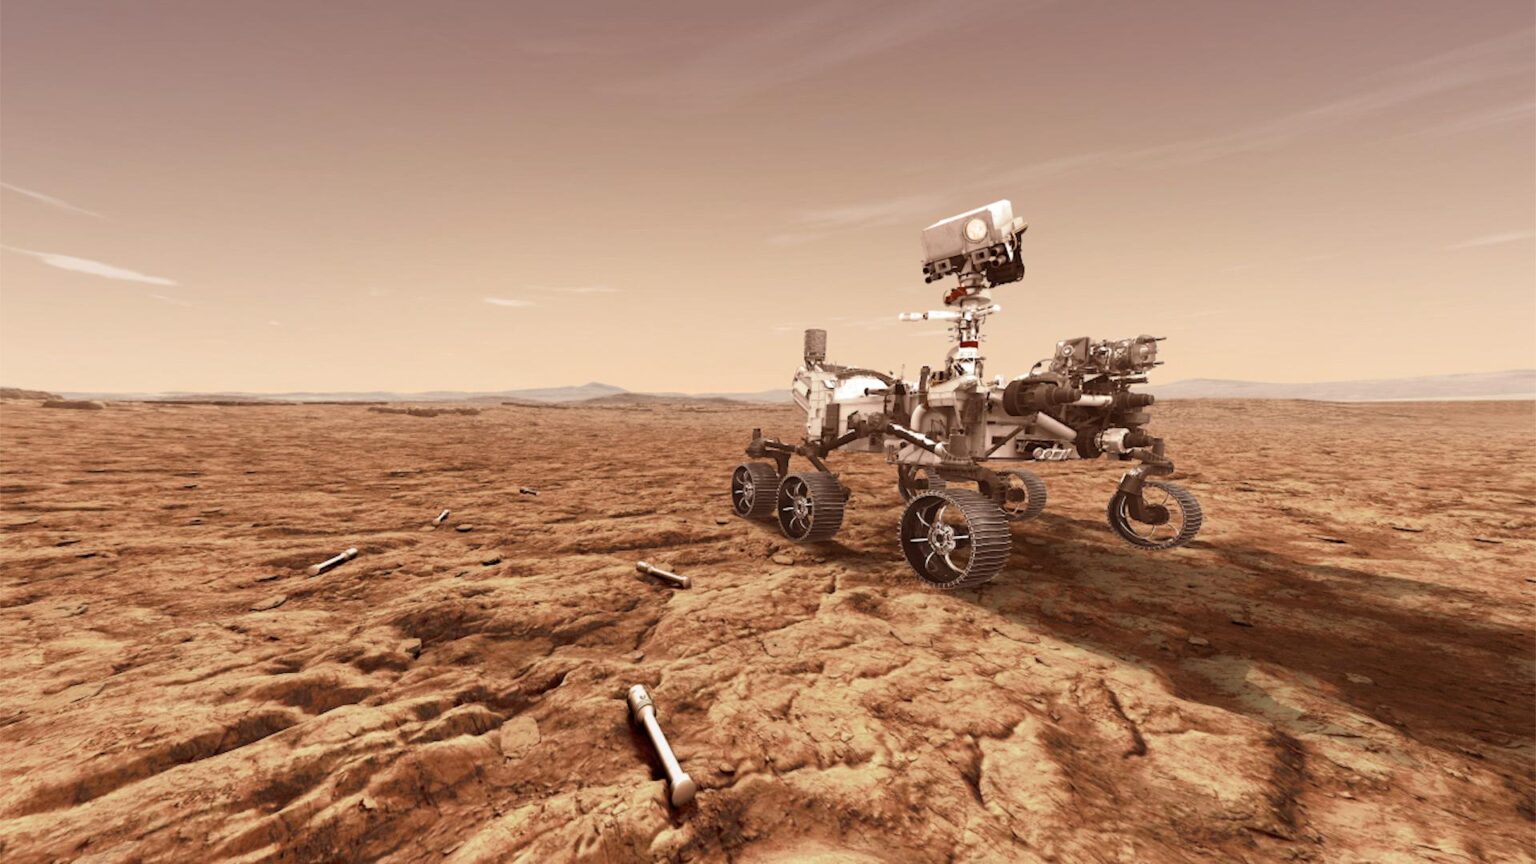 El rover de Marte de la NASA almacena muestras de rocas y suelo en tubos sellados, que serán recuperados y enviados de regreso a la Tierra.